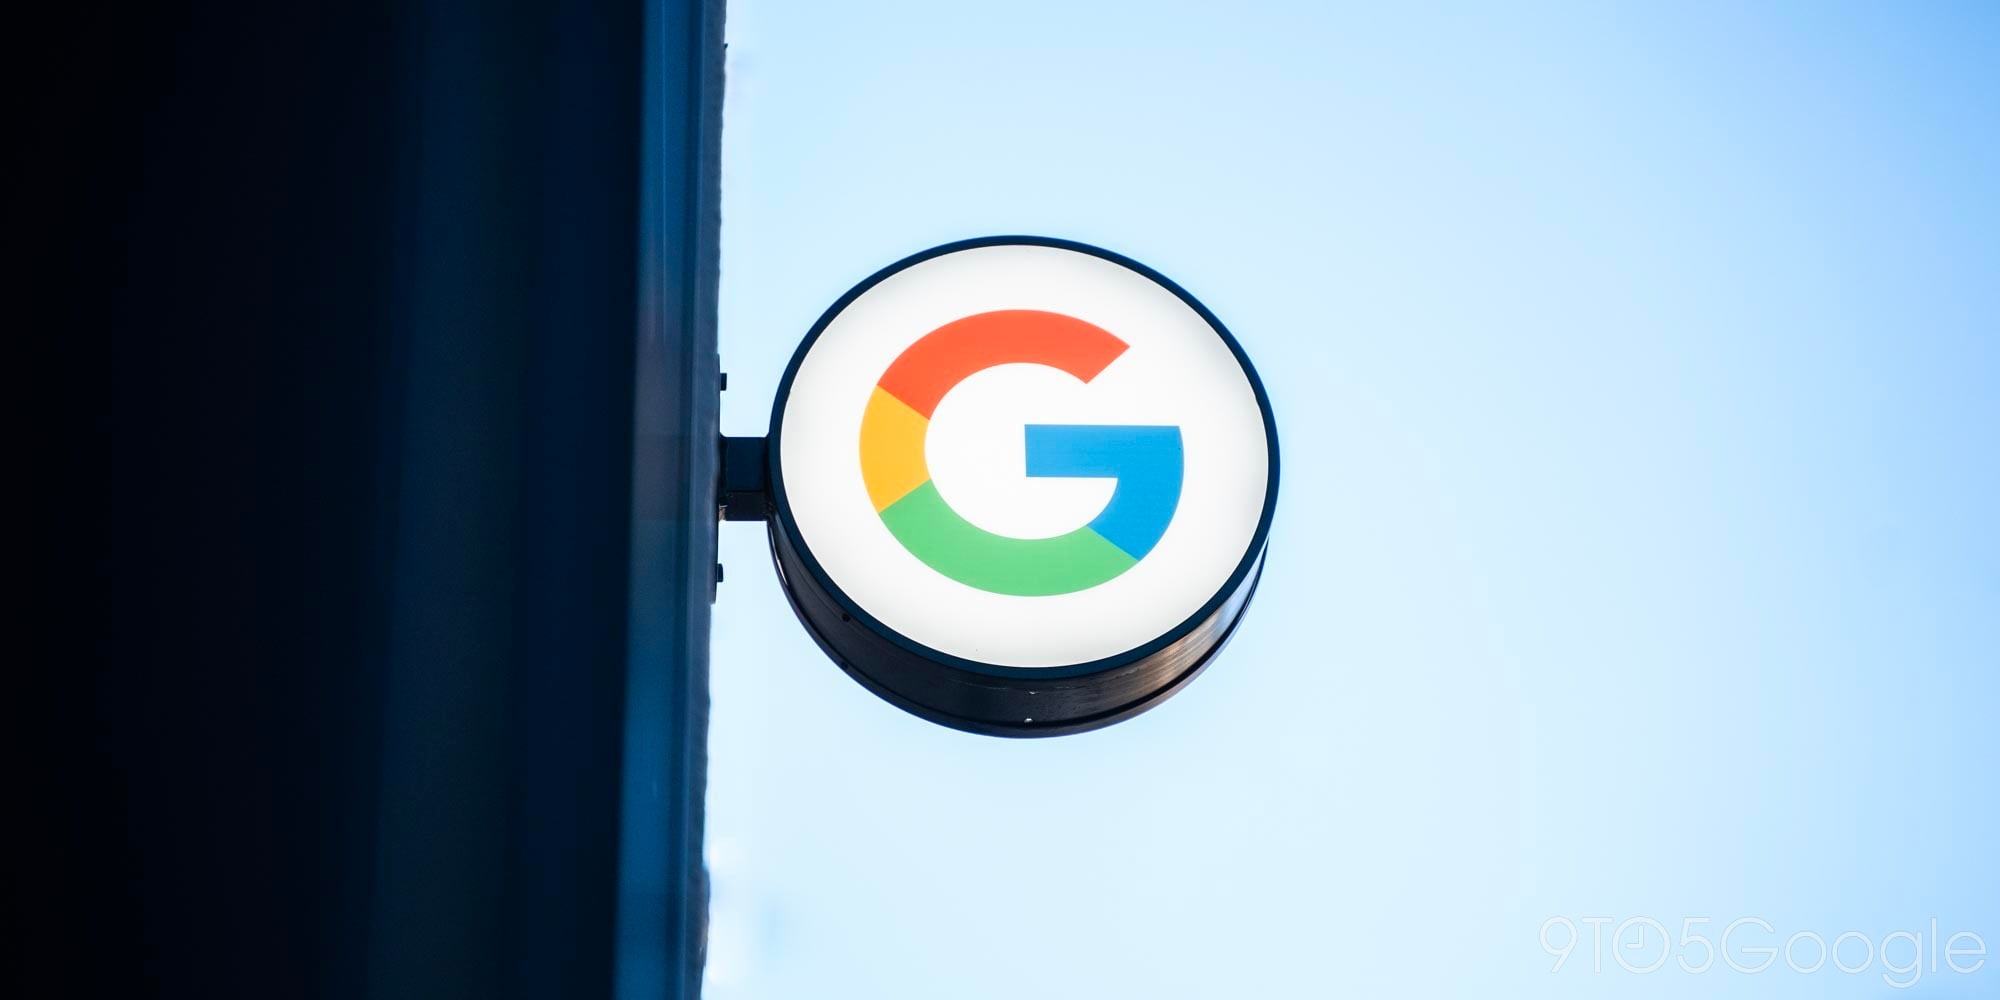  Cumpleaños de Google Store Pixel 6